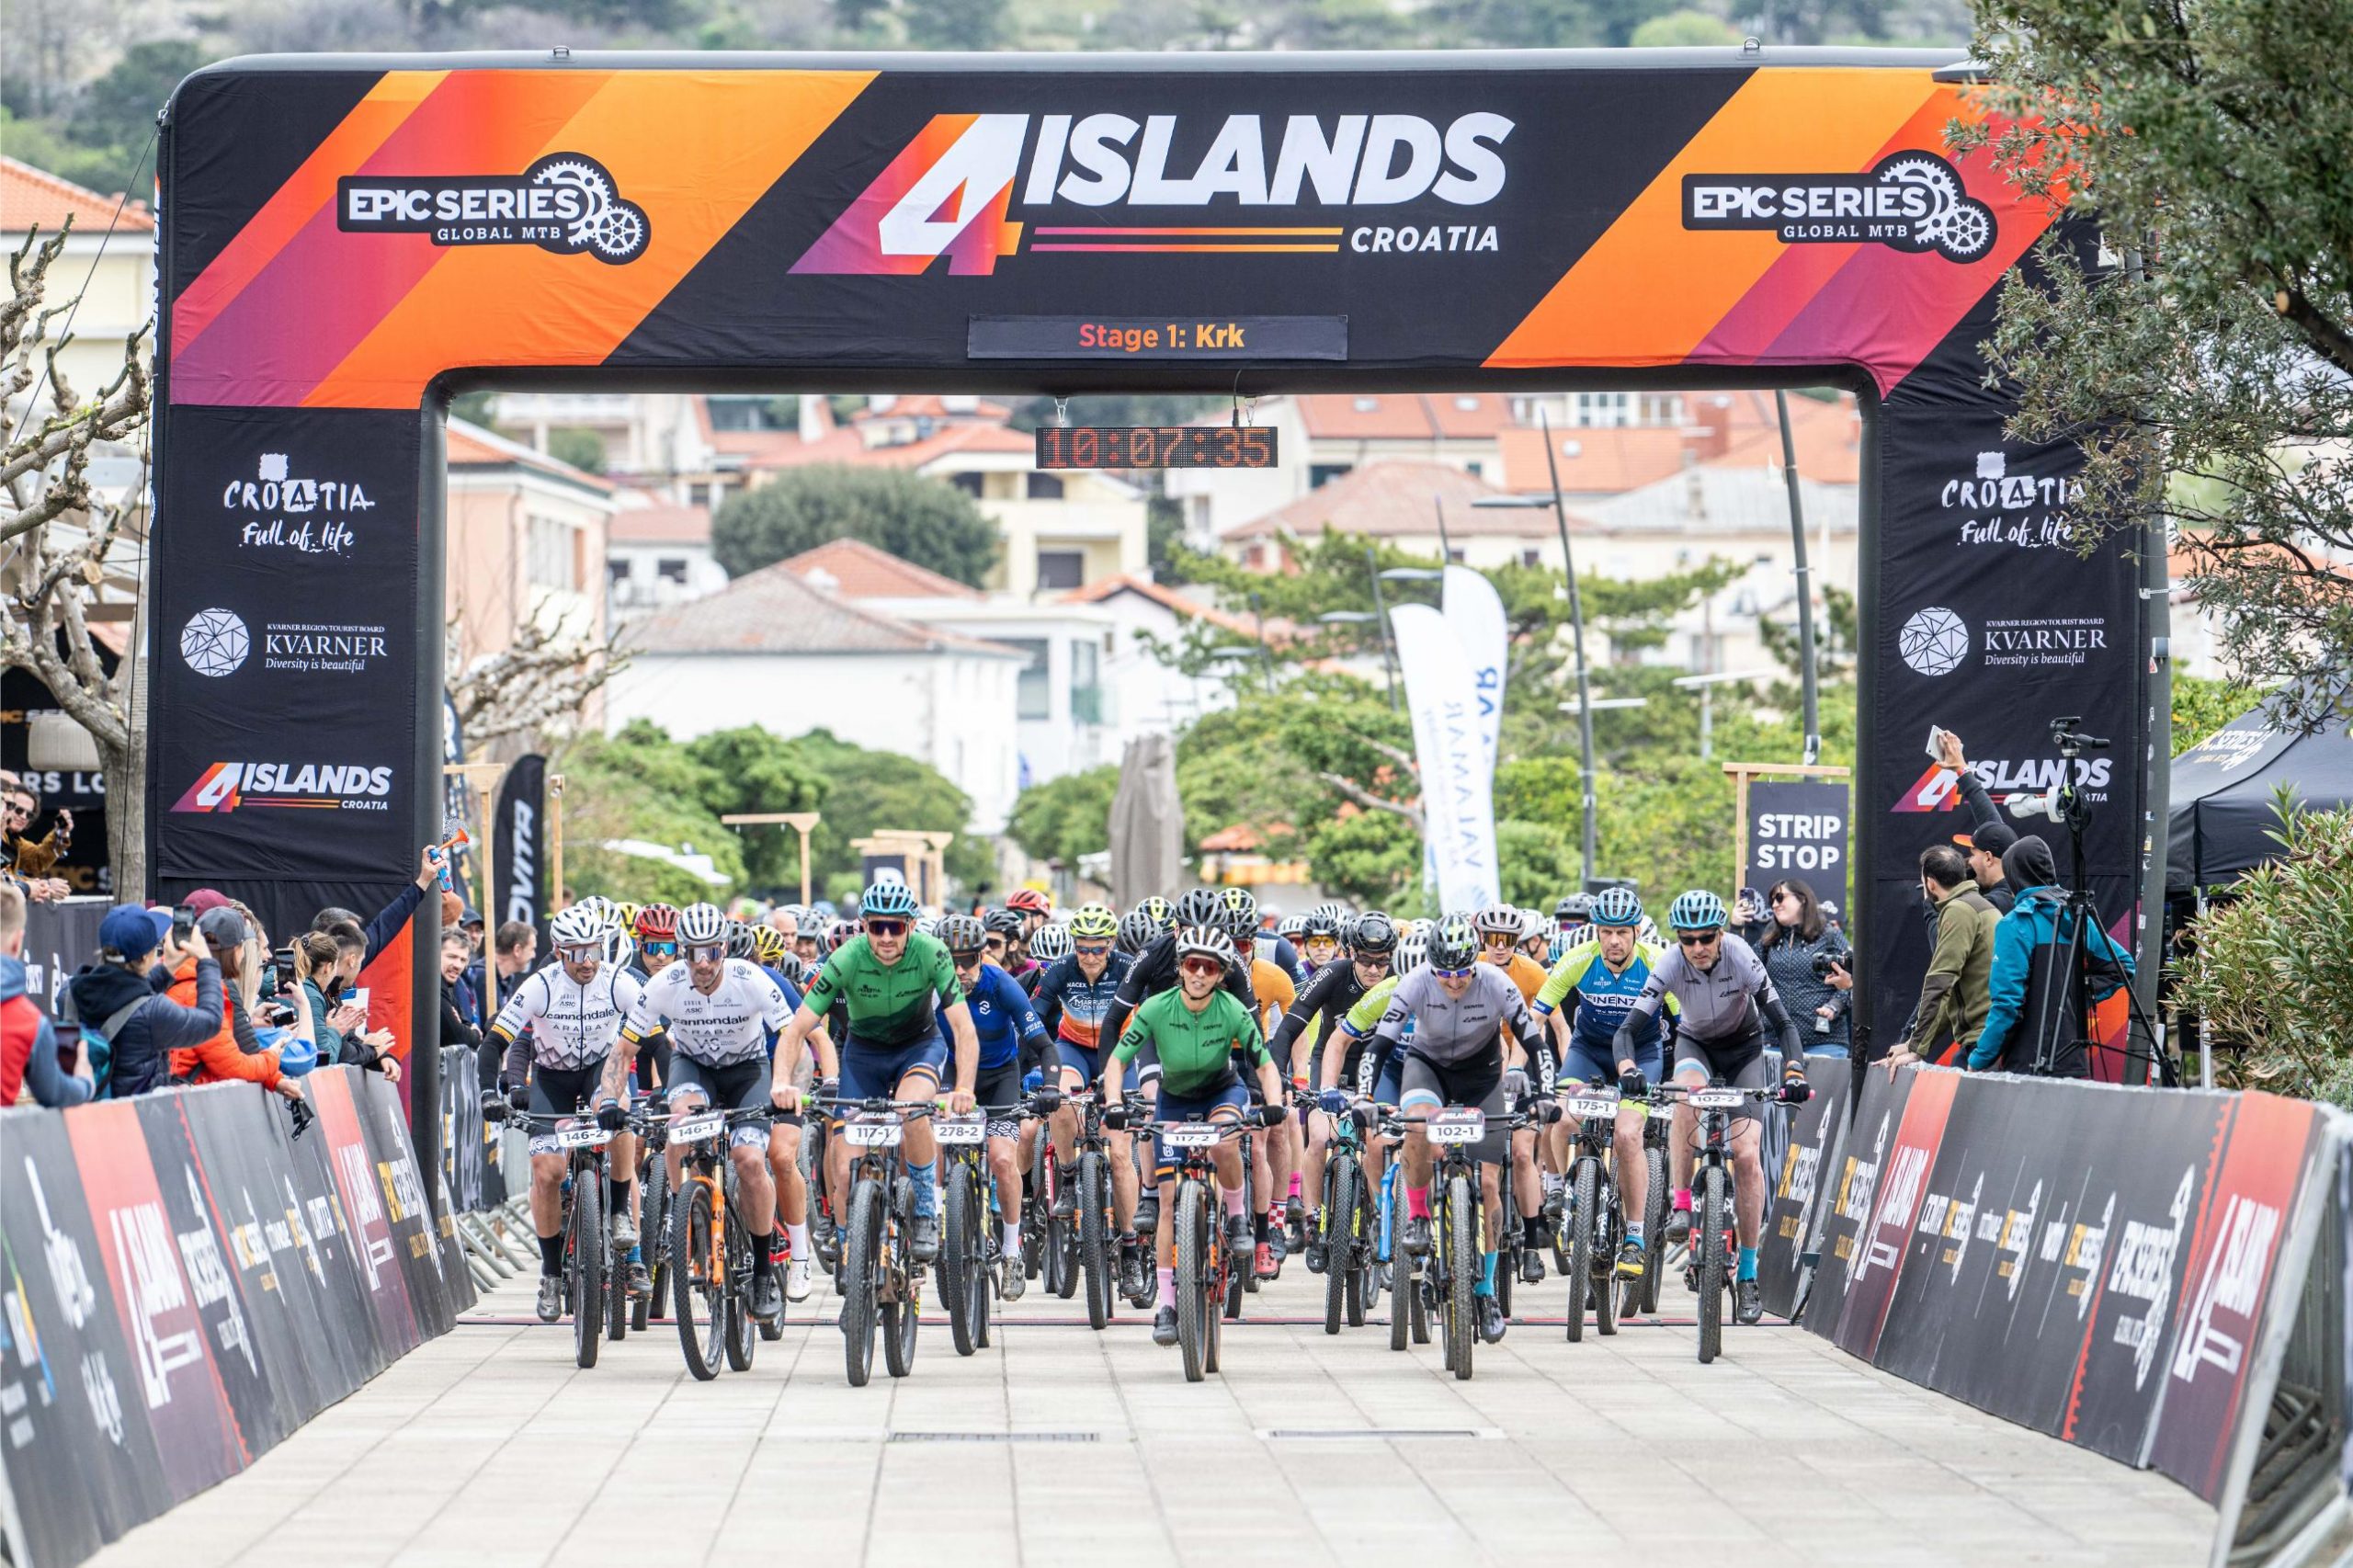 Četiri kvarnerska otoka od 16. - 20. travnja deveti će put ugostiti biciklističku utrku 4 Islands MTB race